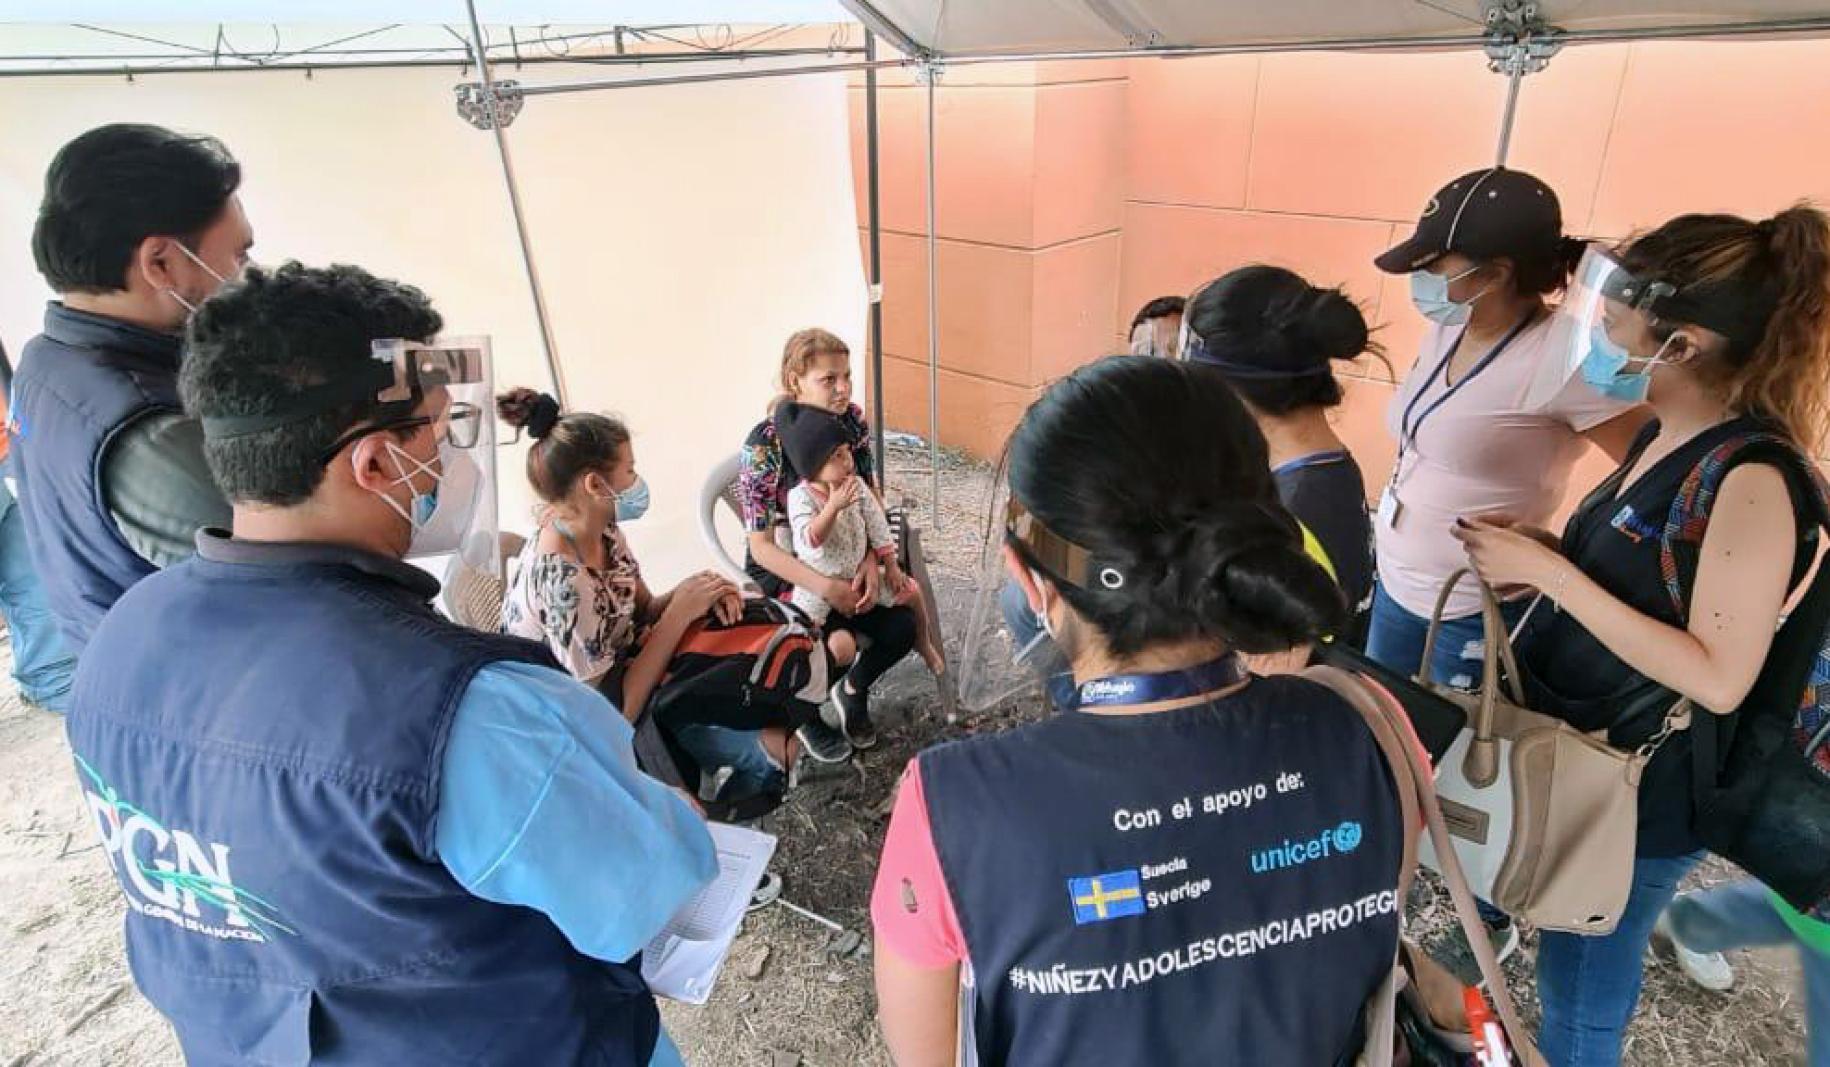 يقف موظفو الأمم المتحدة الذين يرتدون كمامات ودروع واقية للوجه حول أسرة جالسة، وكل ذلك تحت خيمة.